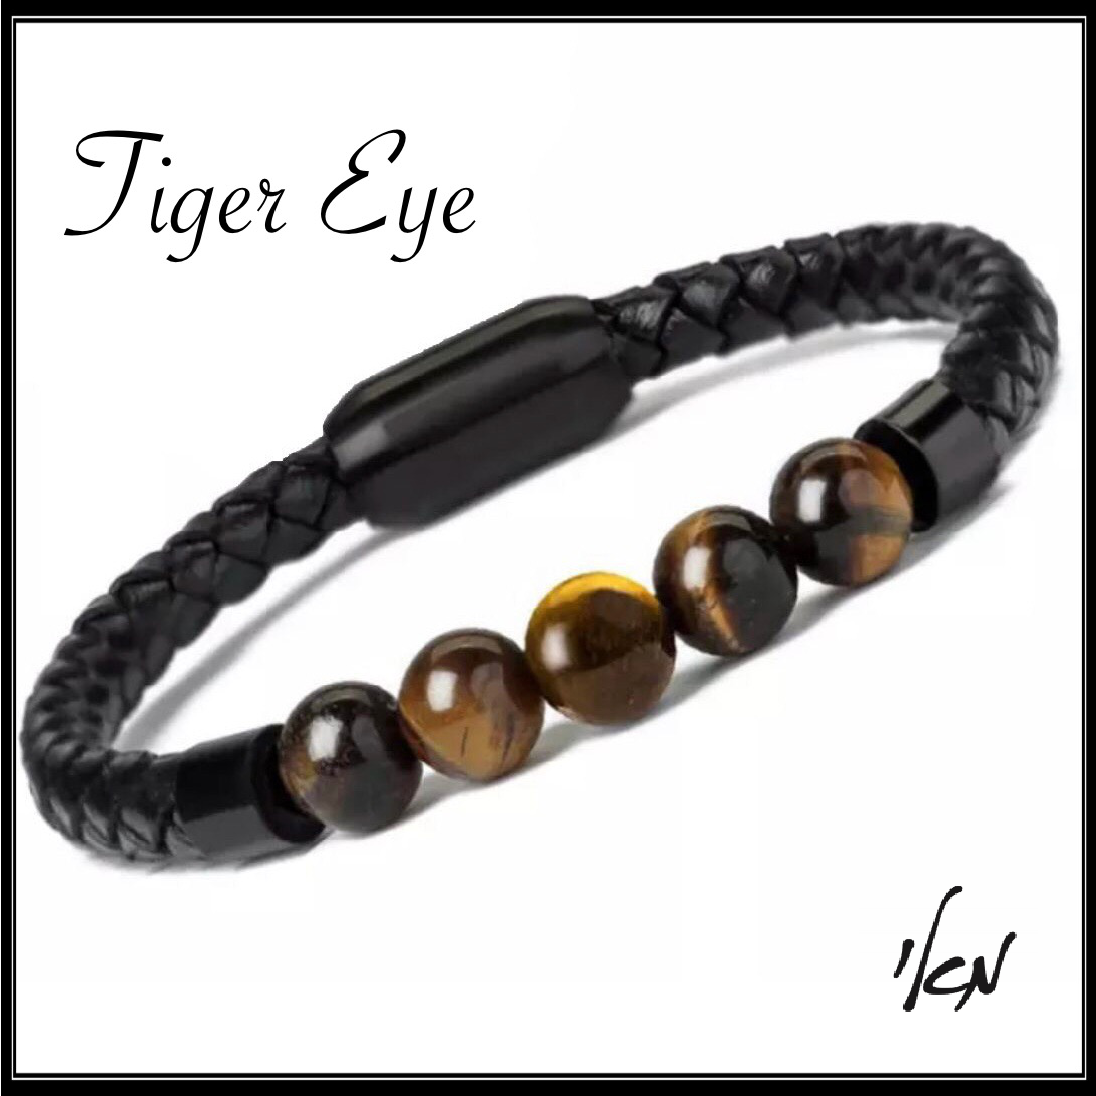 צמיד עור שחור-טייגר איי לגבר - Leather/Tiger Eye Bracelet